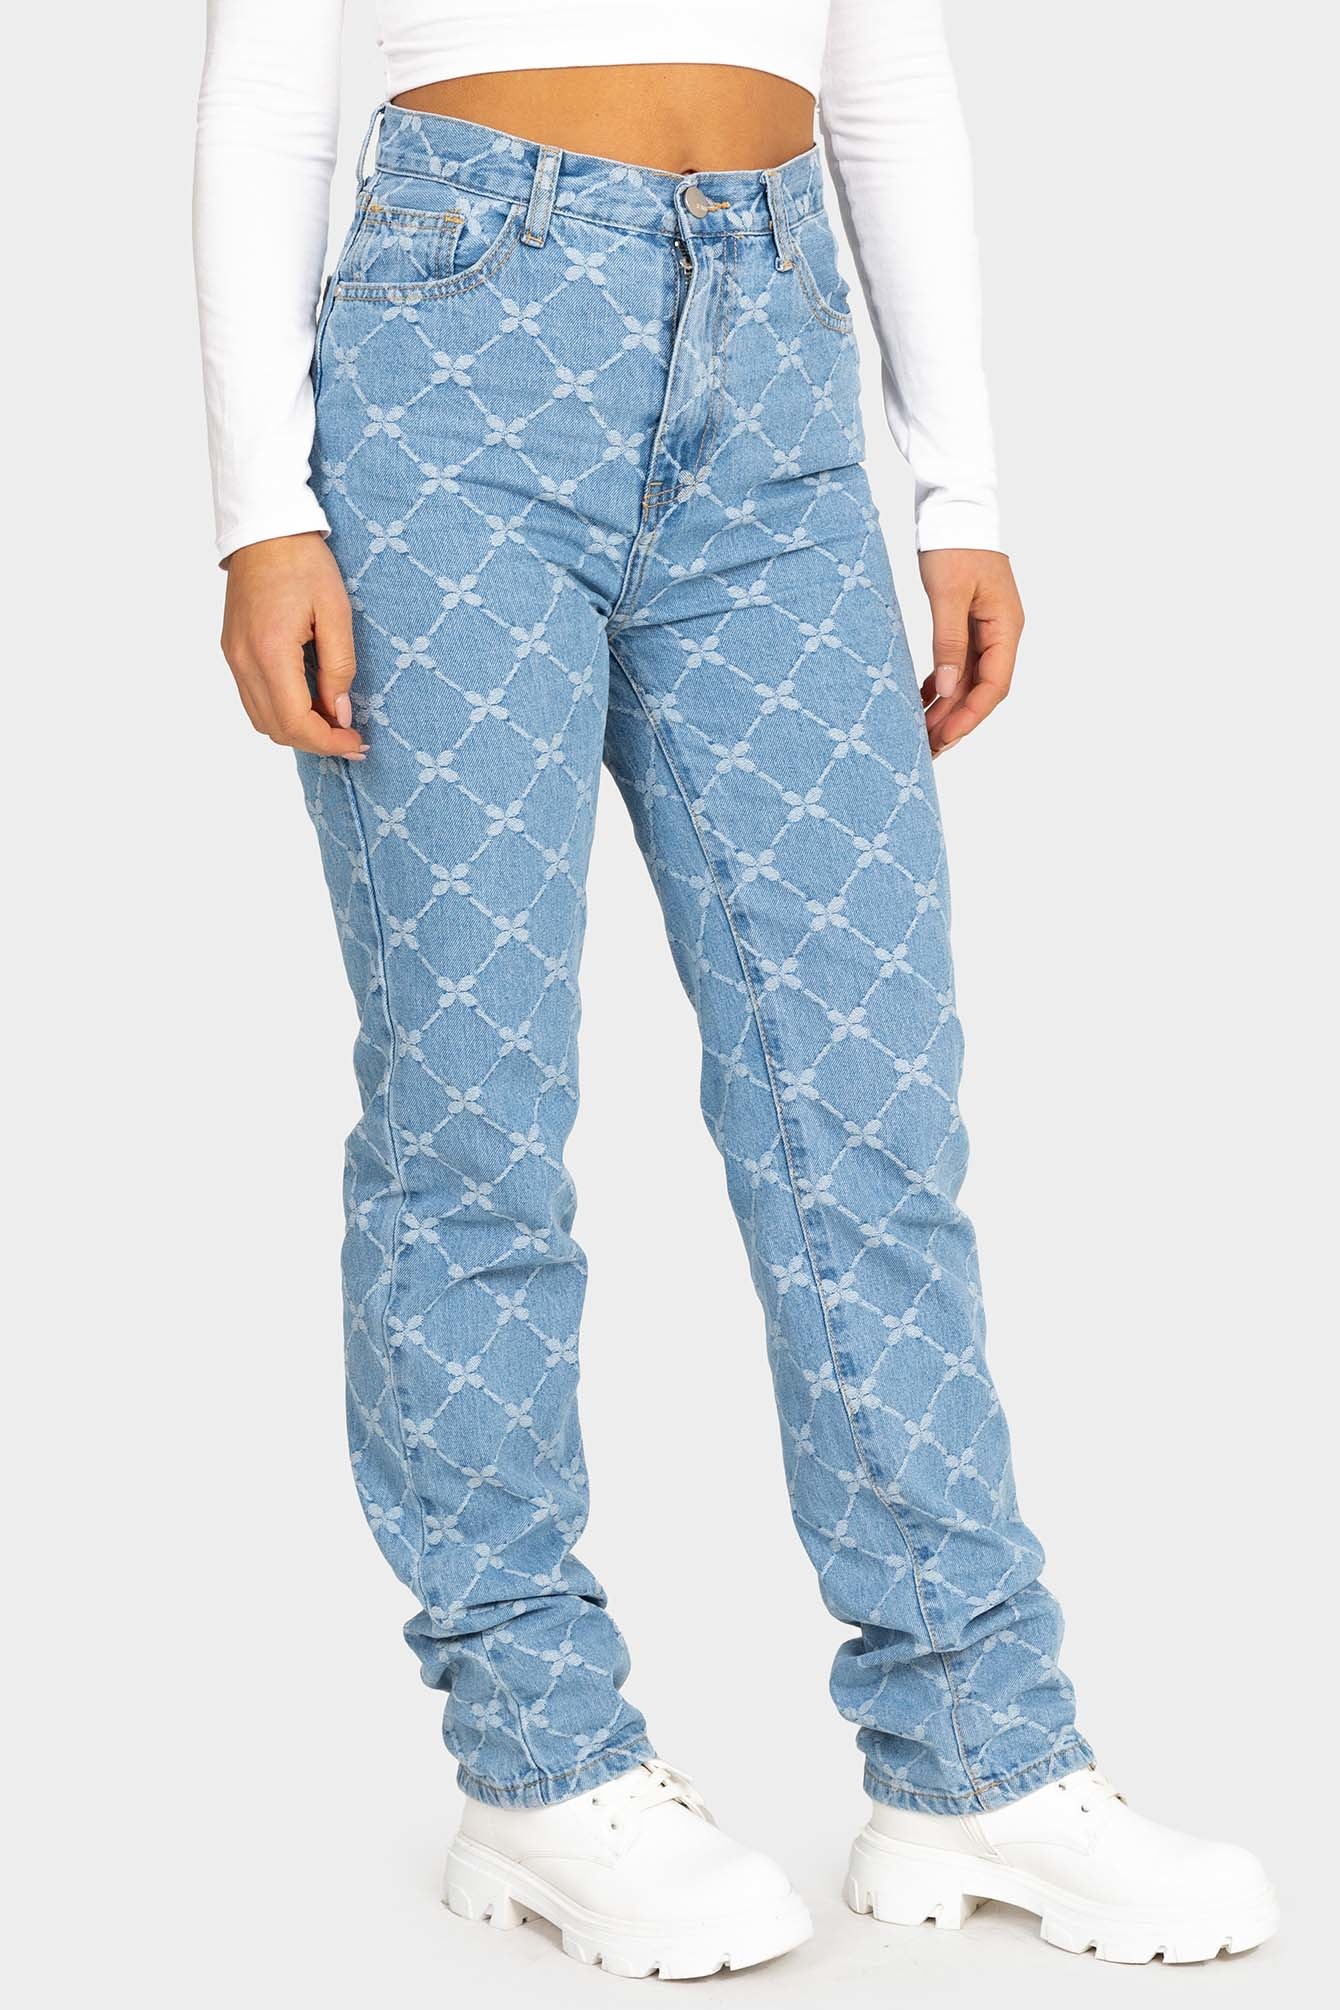 Shop blauwe mom jeans met patroon | - Elise Store